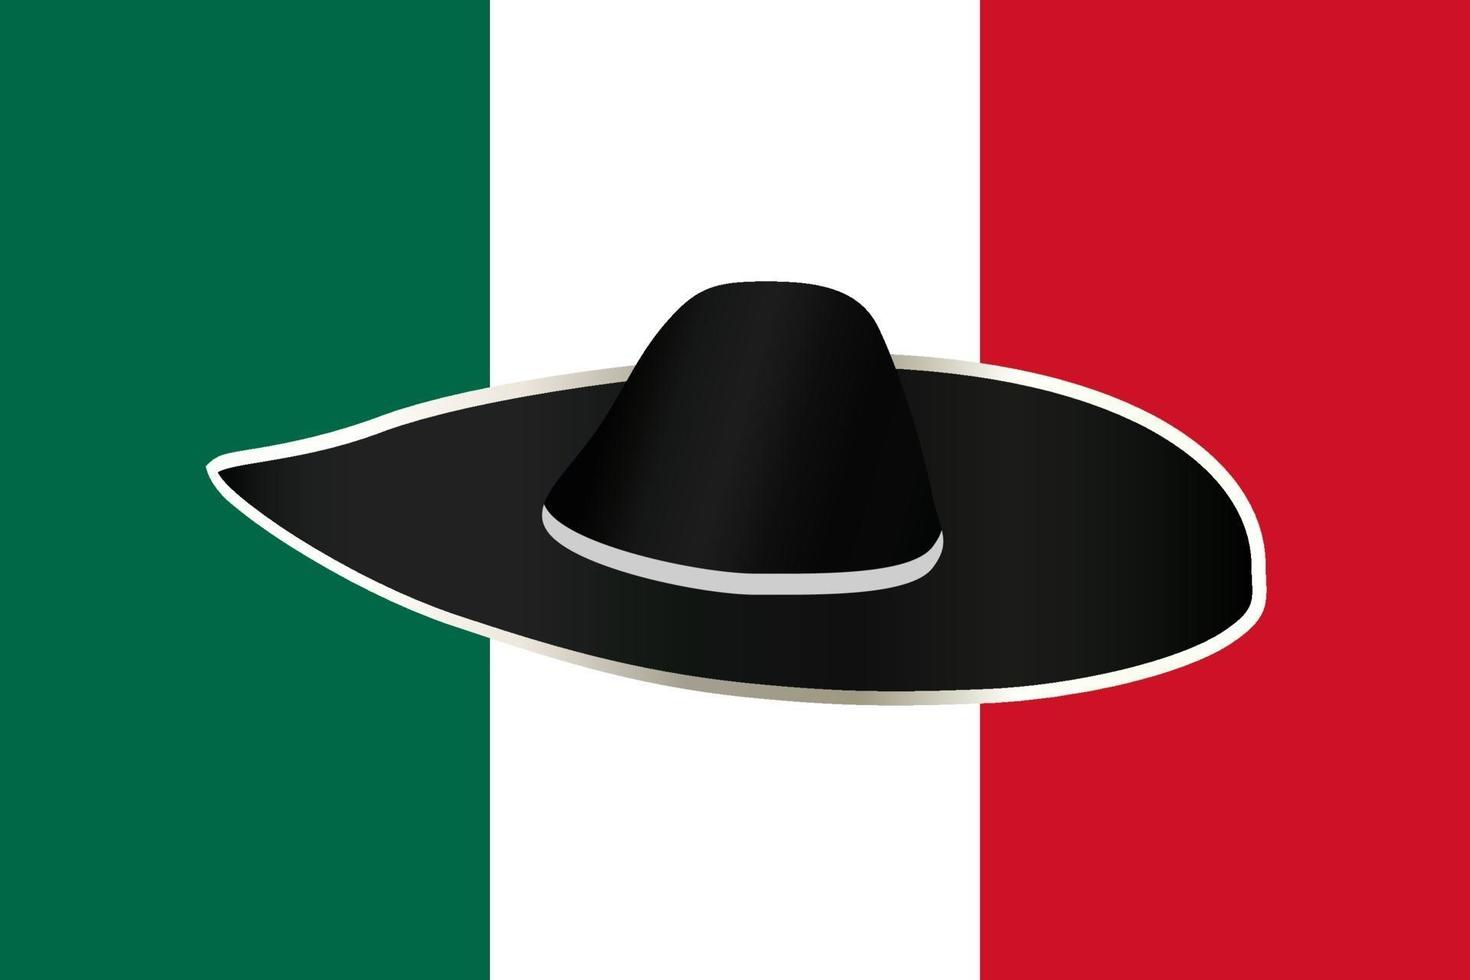 sombrero en el fondo de la bandera mexicana. ilustración vectorial sobre el tema del turismo, las costumbres, la vestimenta nacional. vector